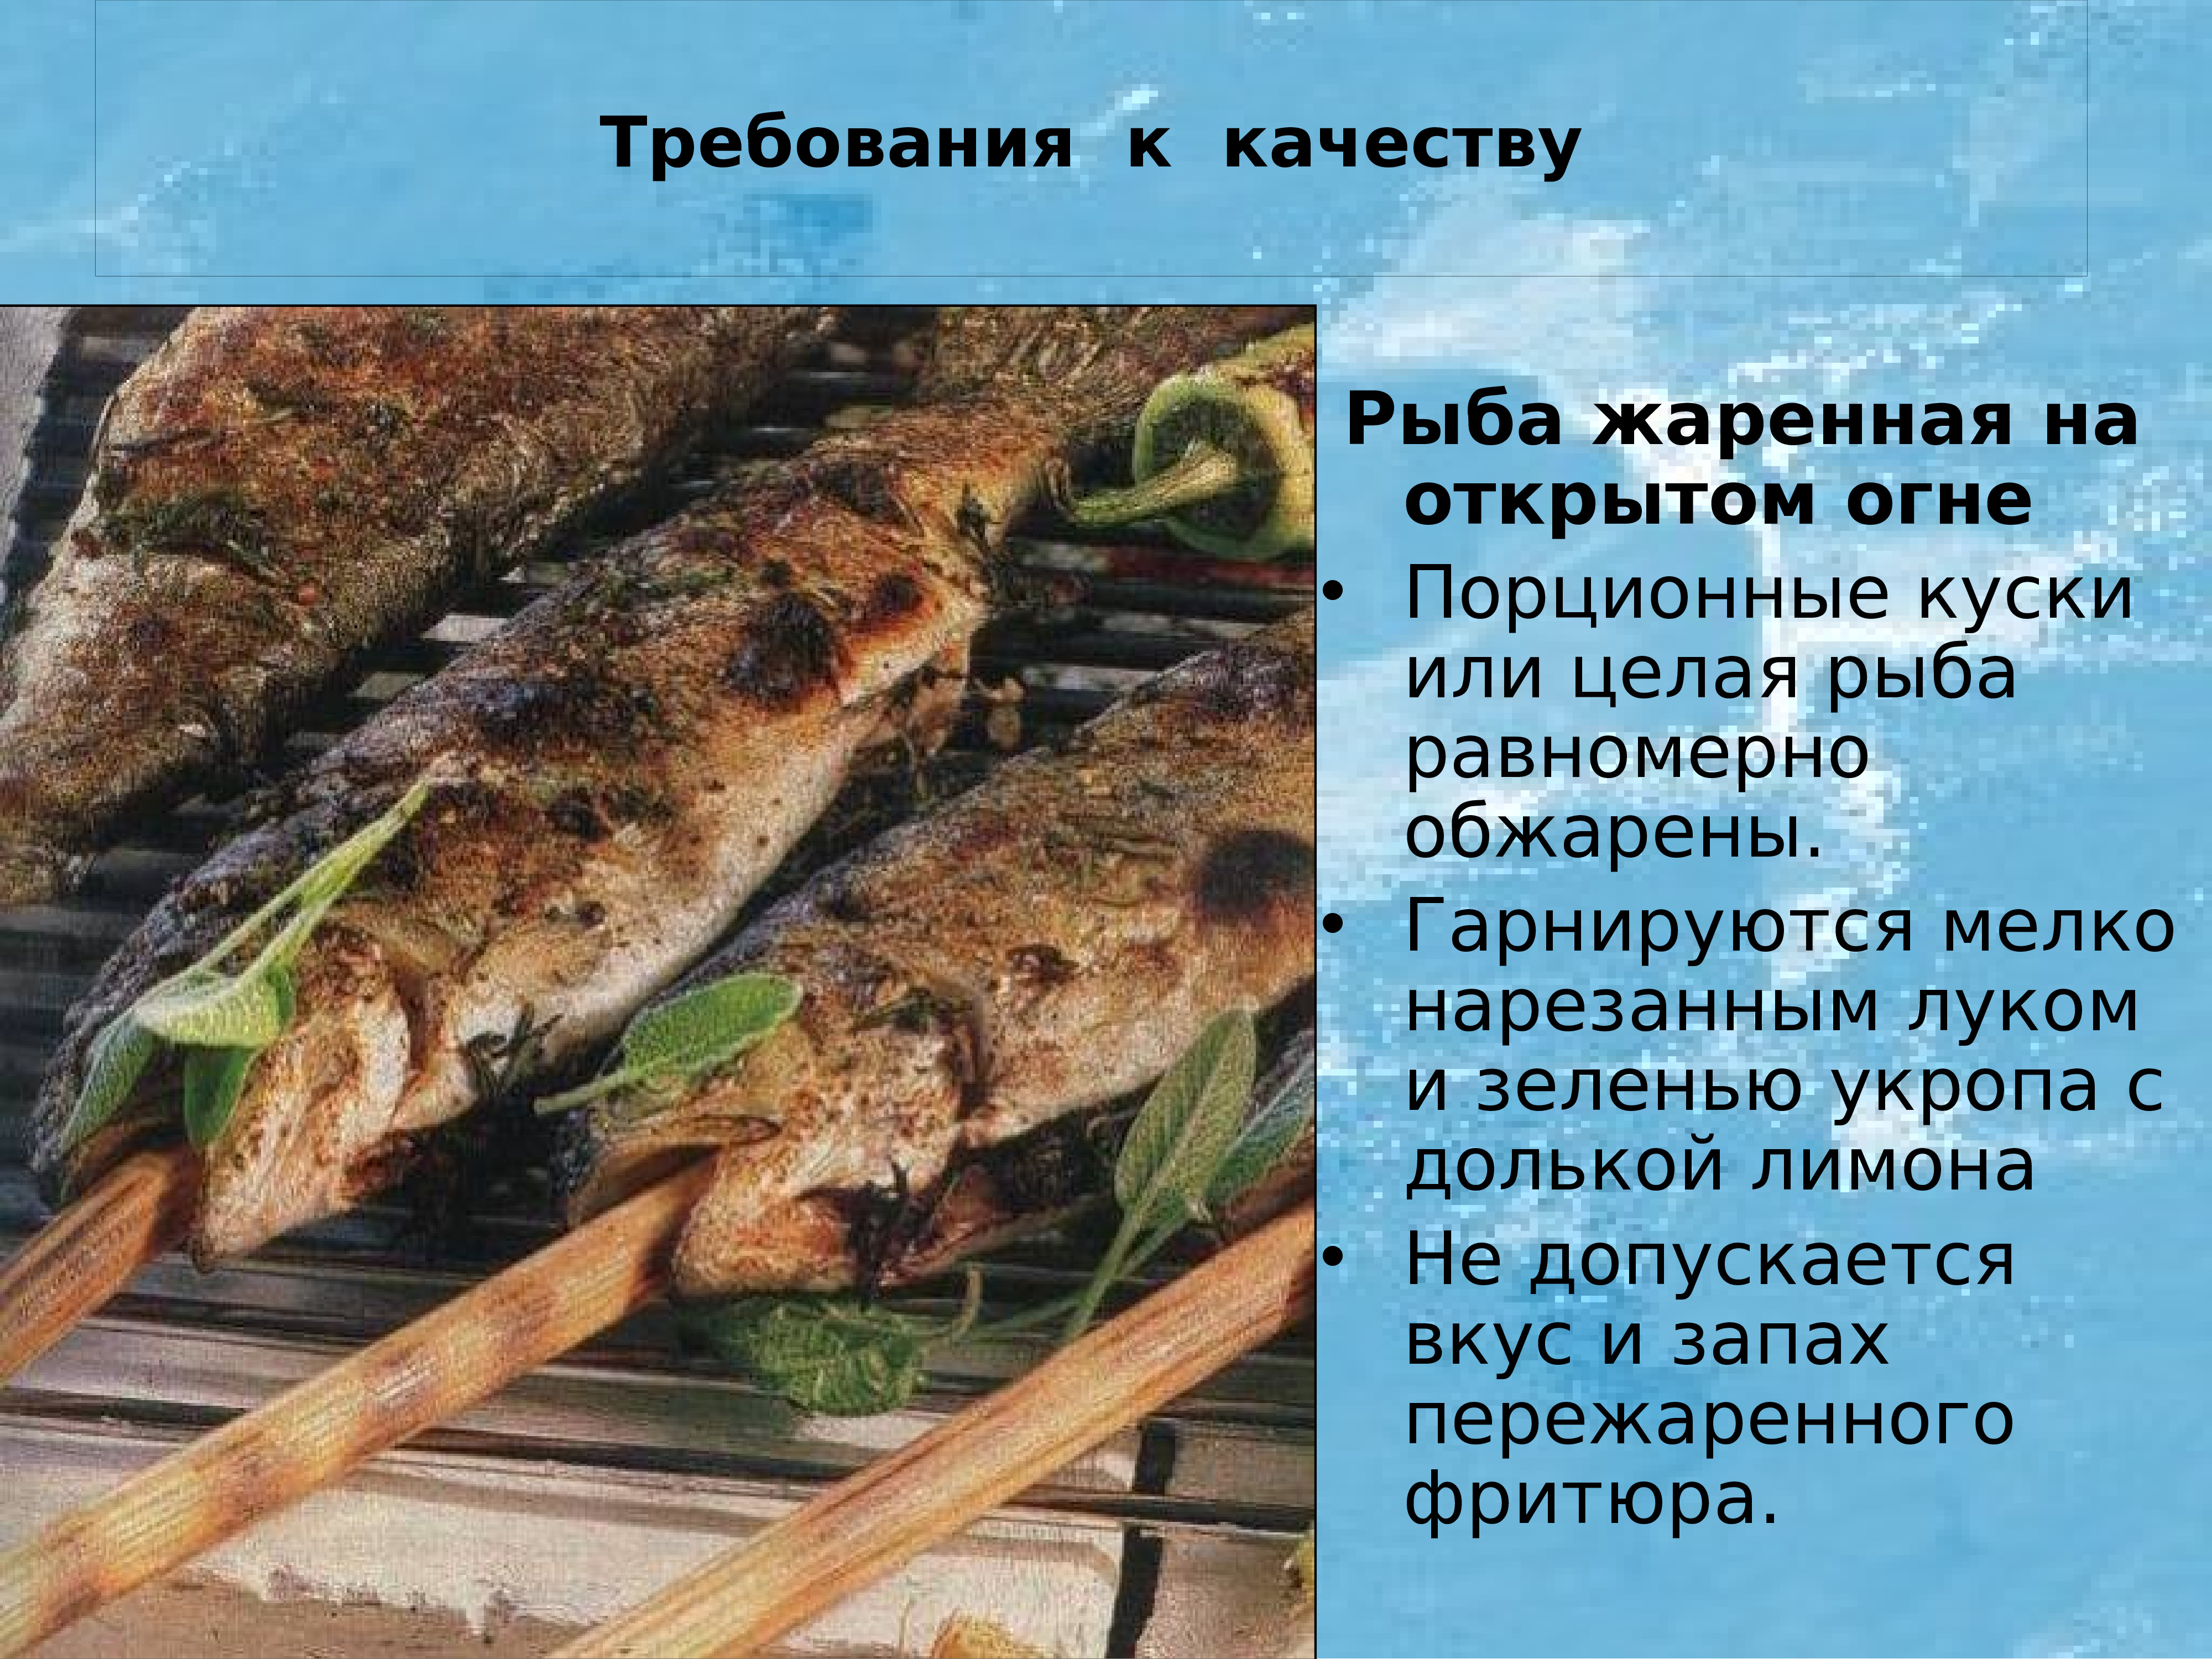 Технология приготовления запеченной рыбы